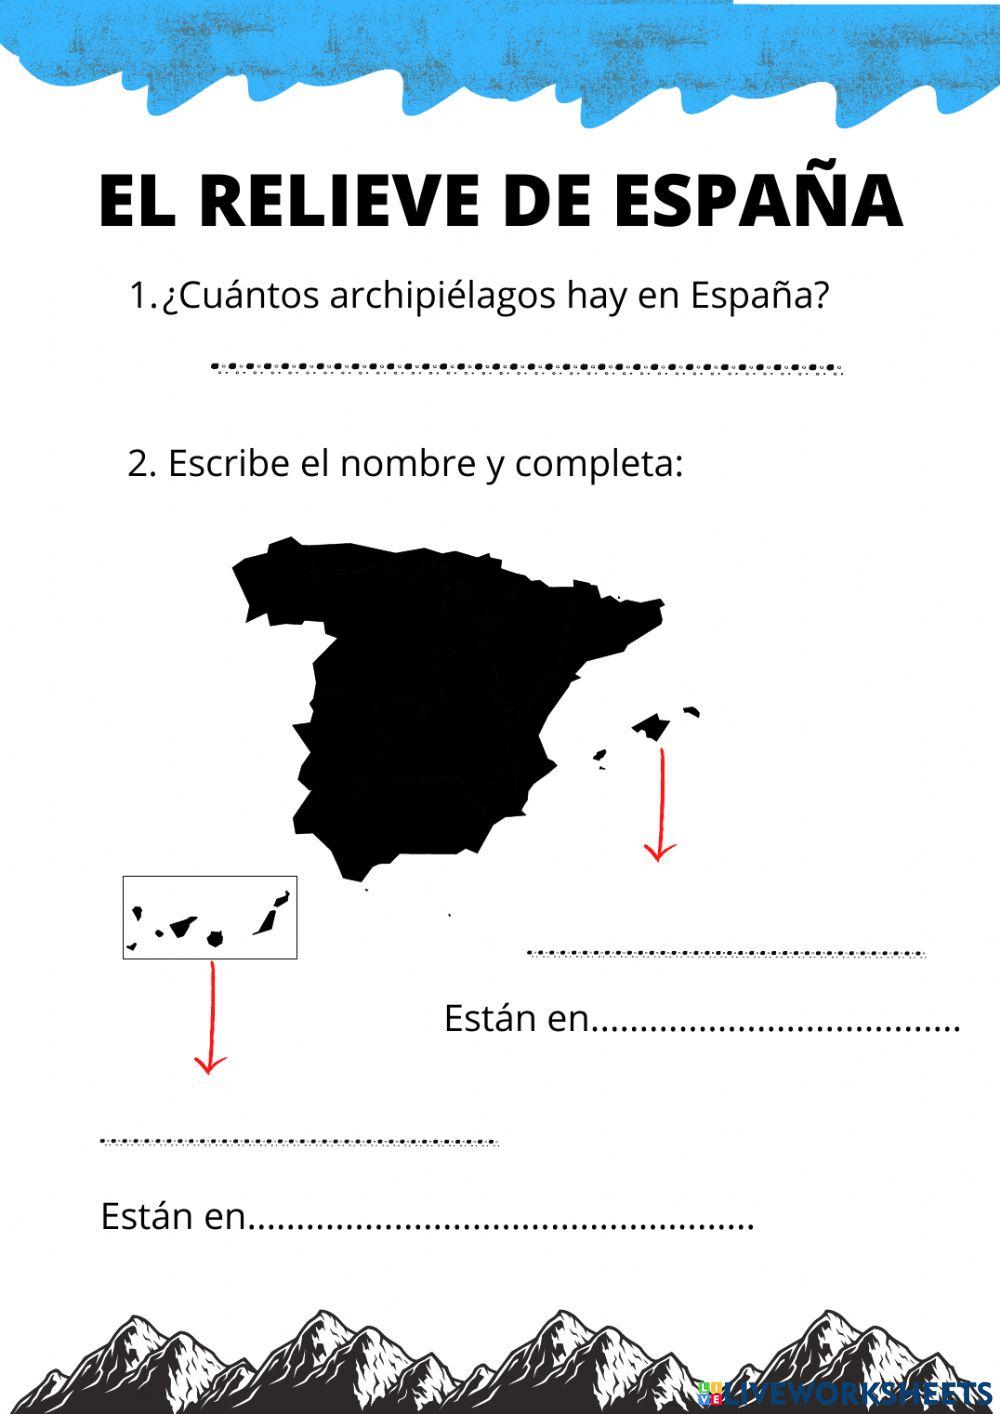 Los archipiélagos de España